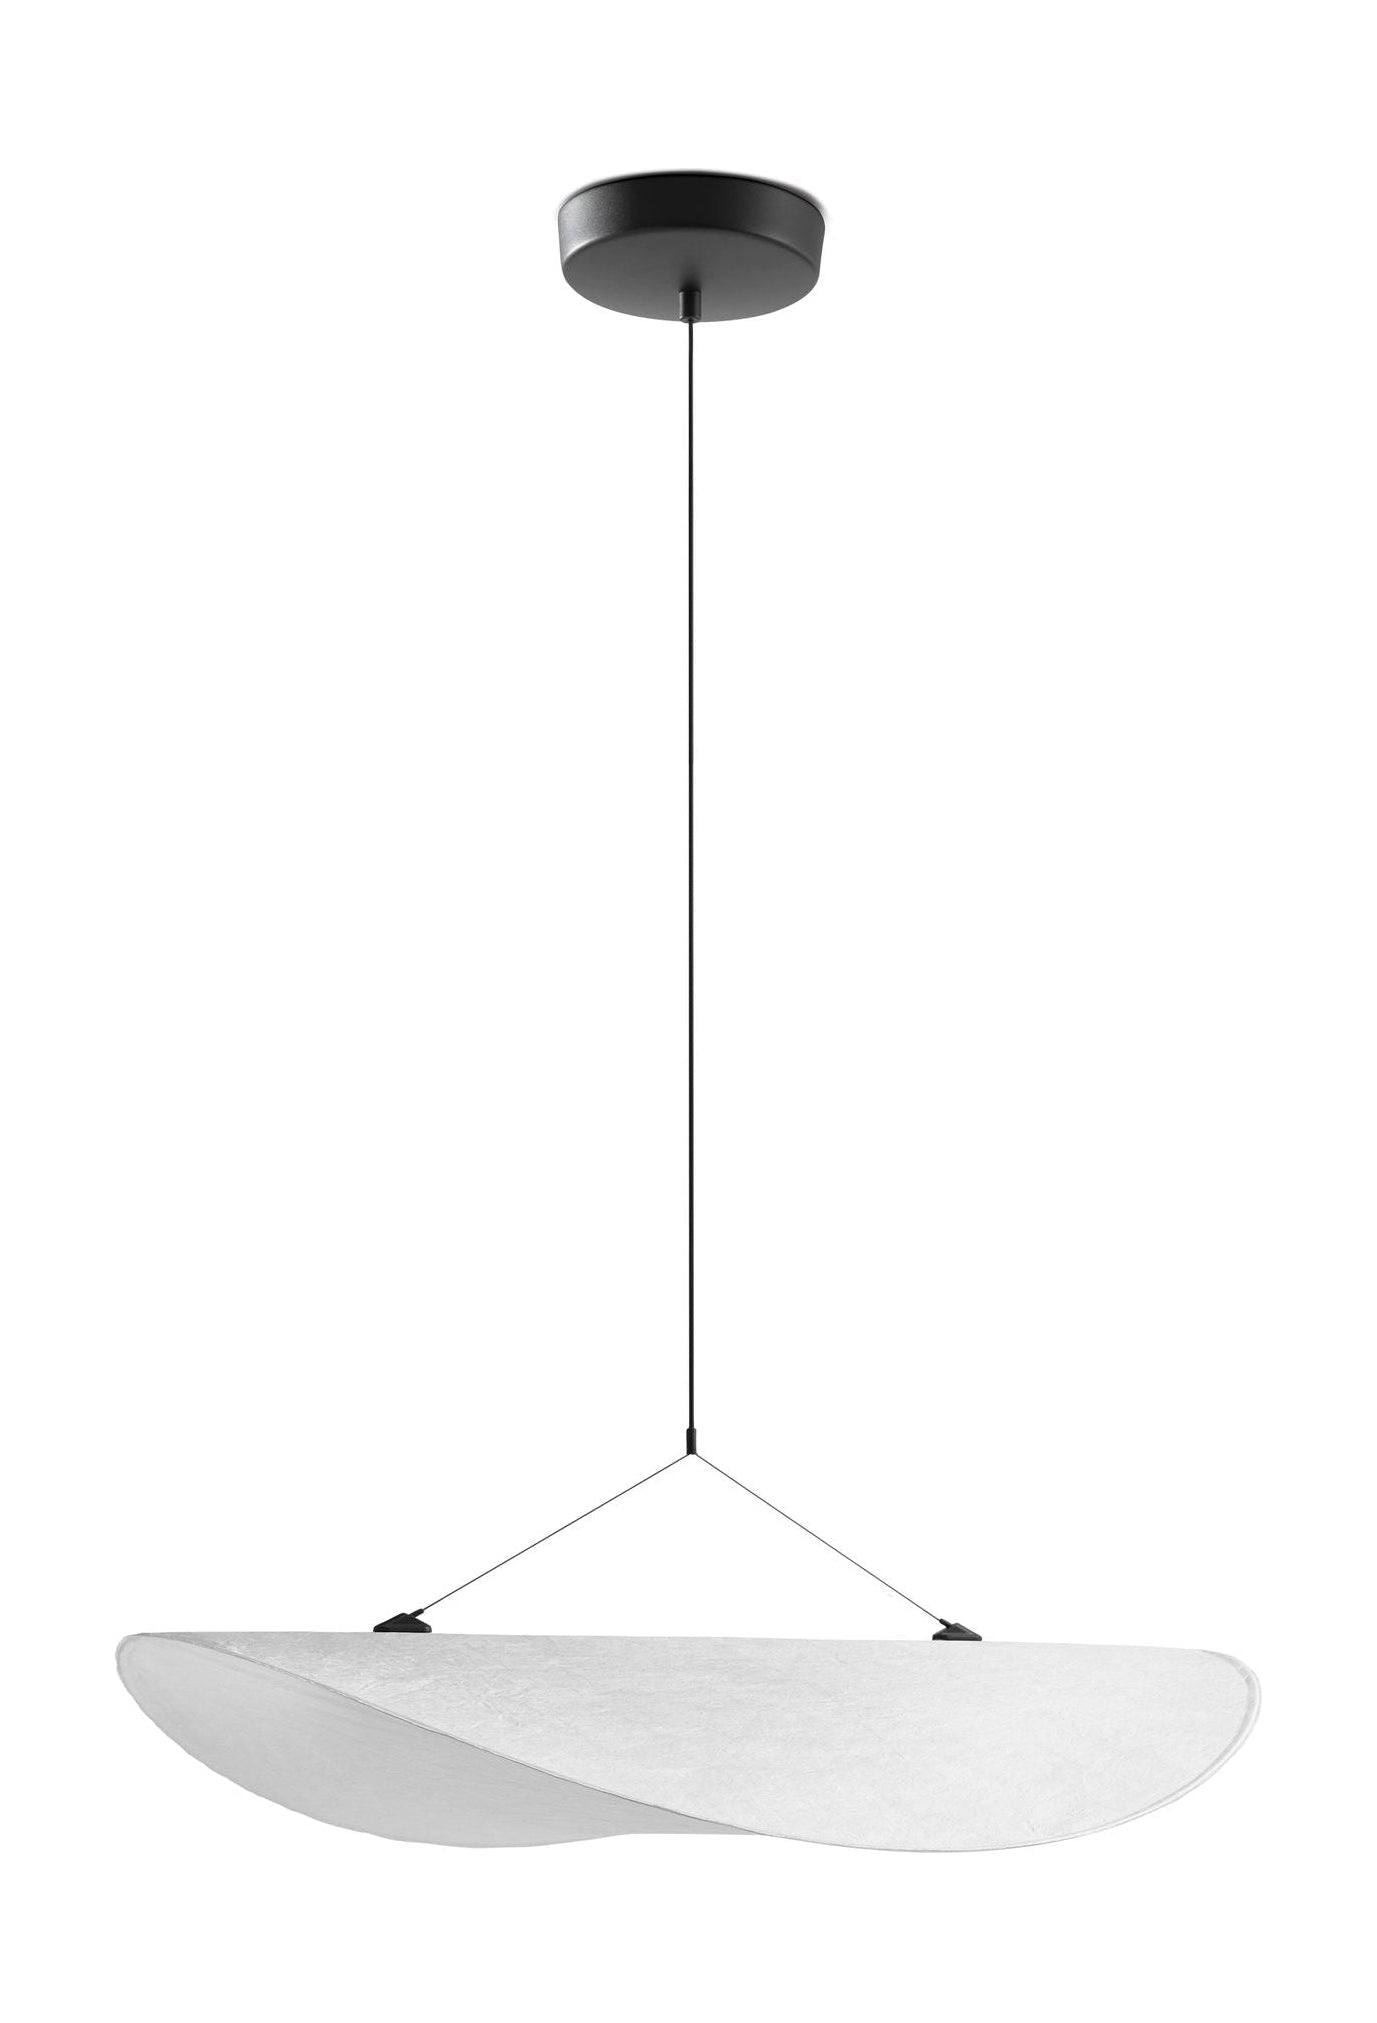 Nowa lampka wisząca napięta, Ø 70 cm